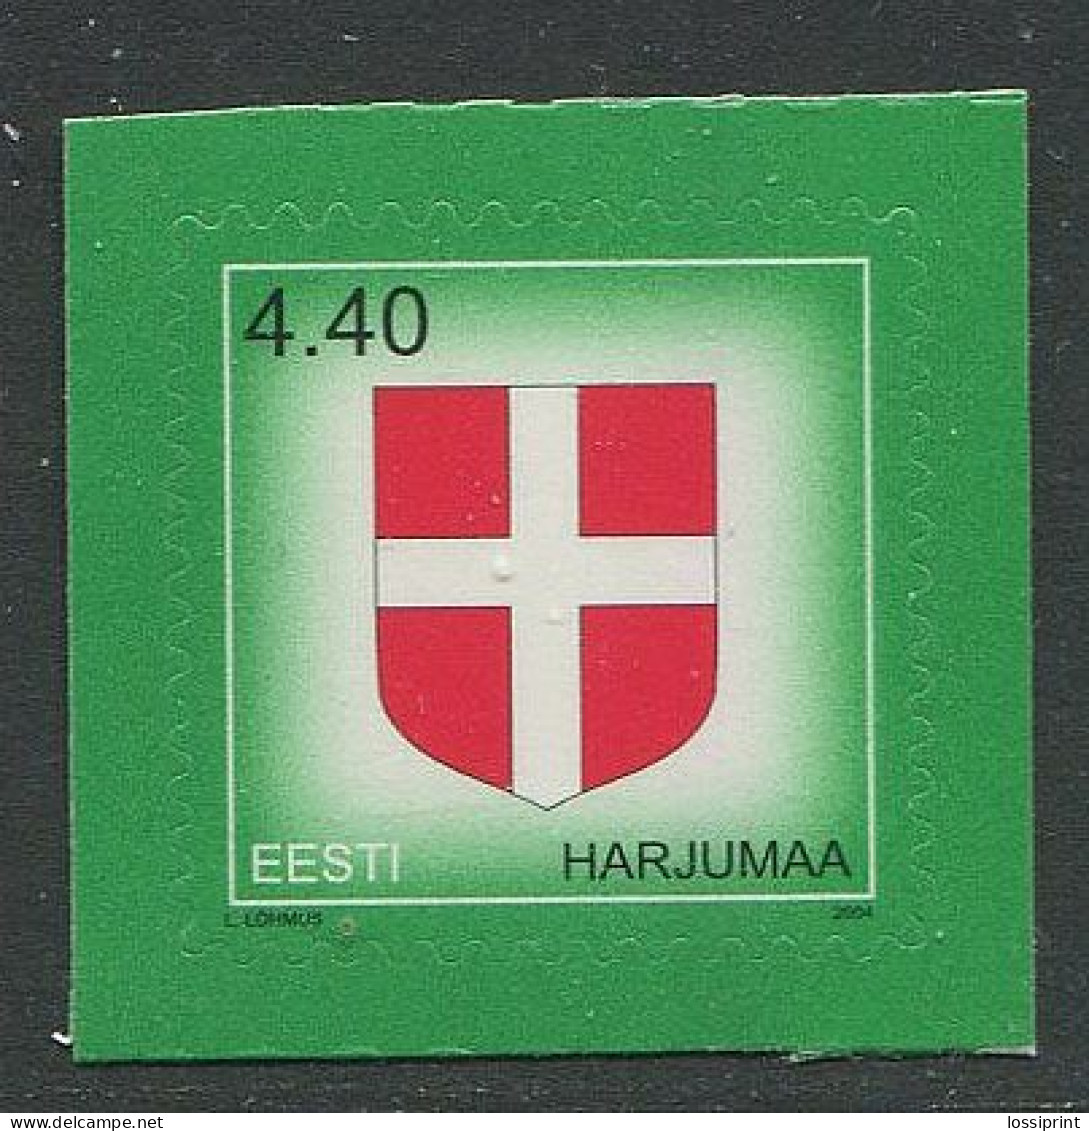 Estonia:Unused Stamp Harjumaa Coat Of Arm, 2004, MNH - Estonia